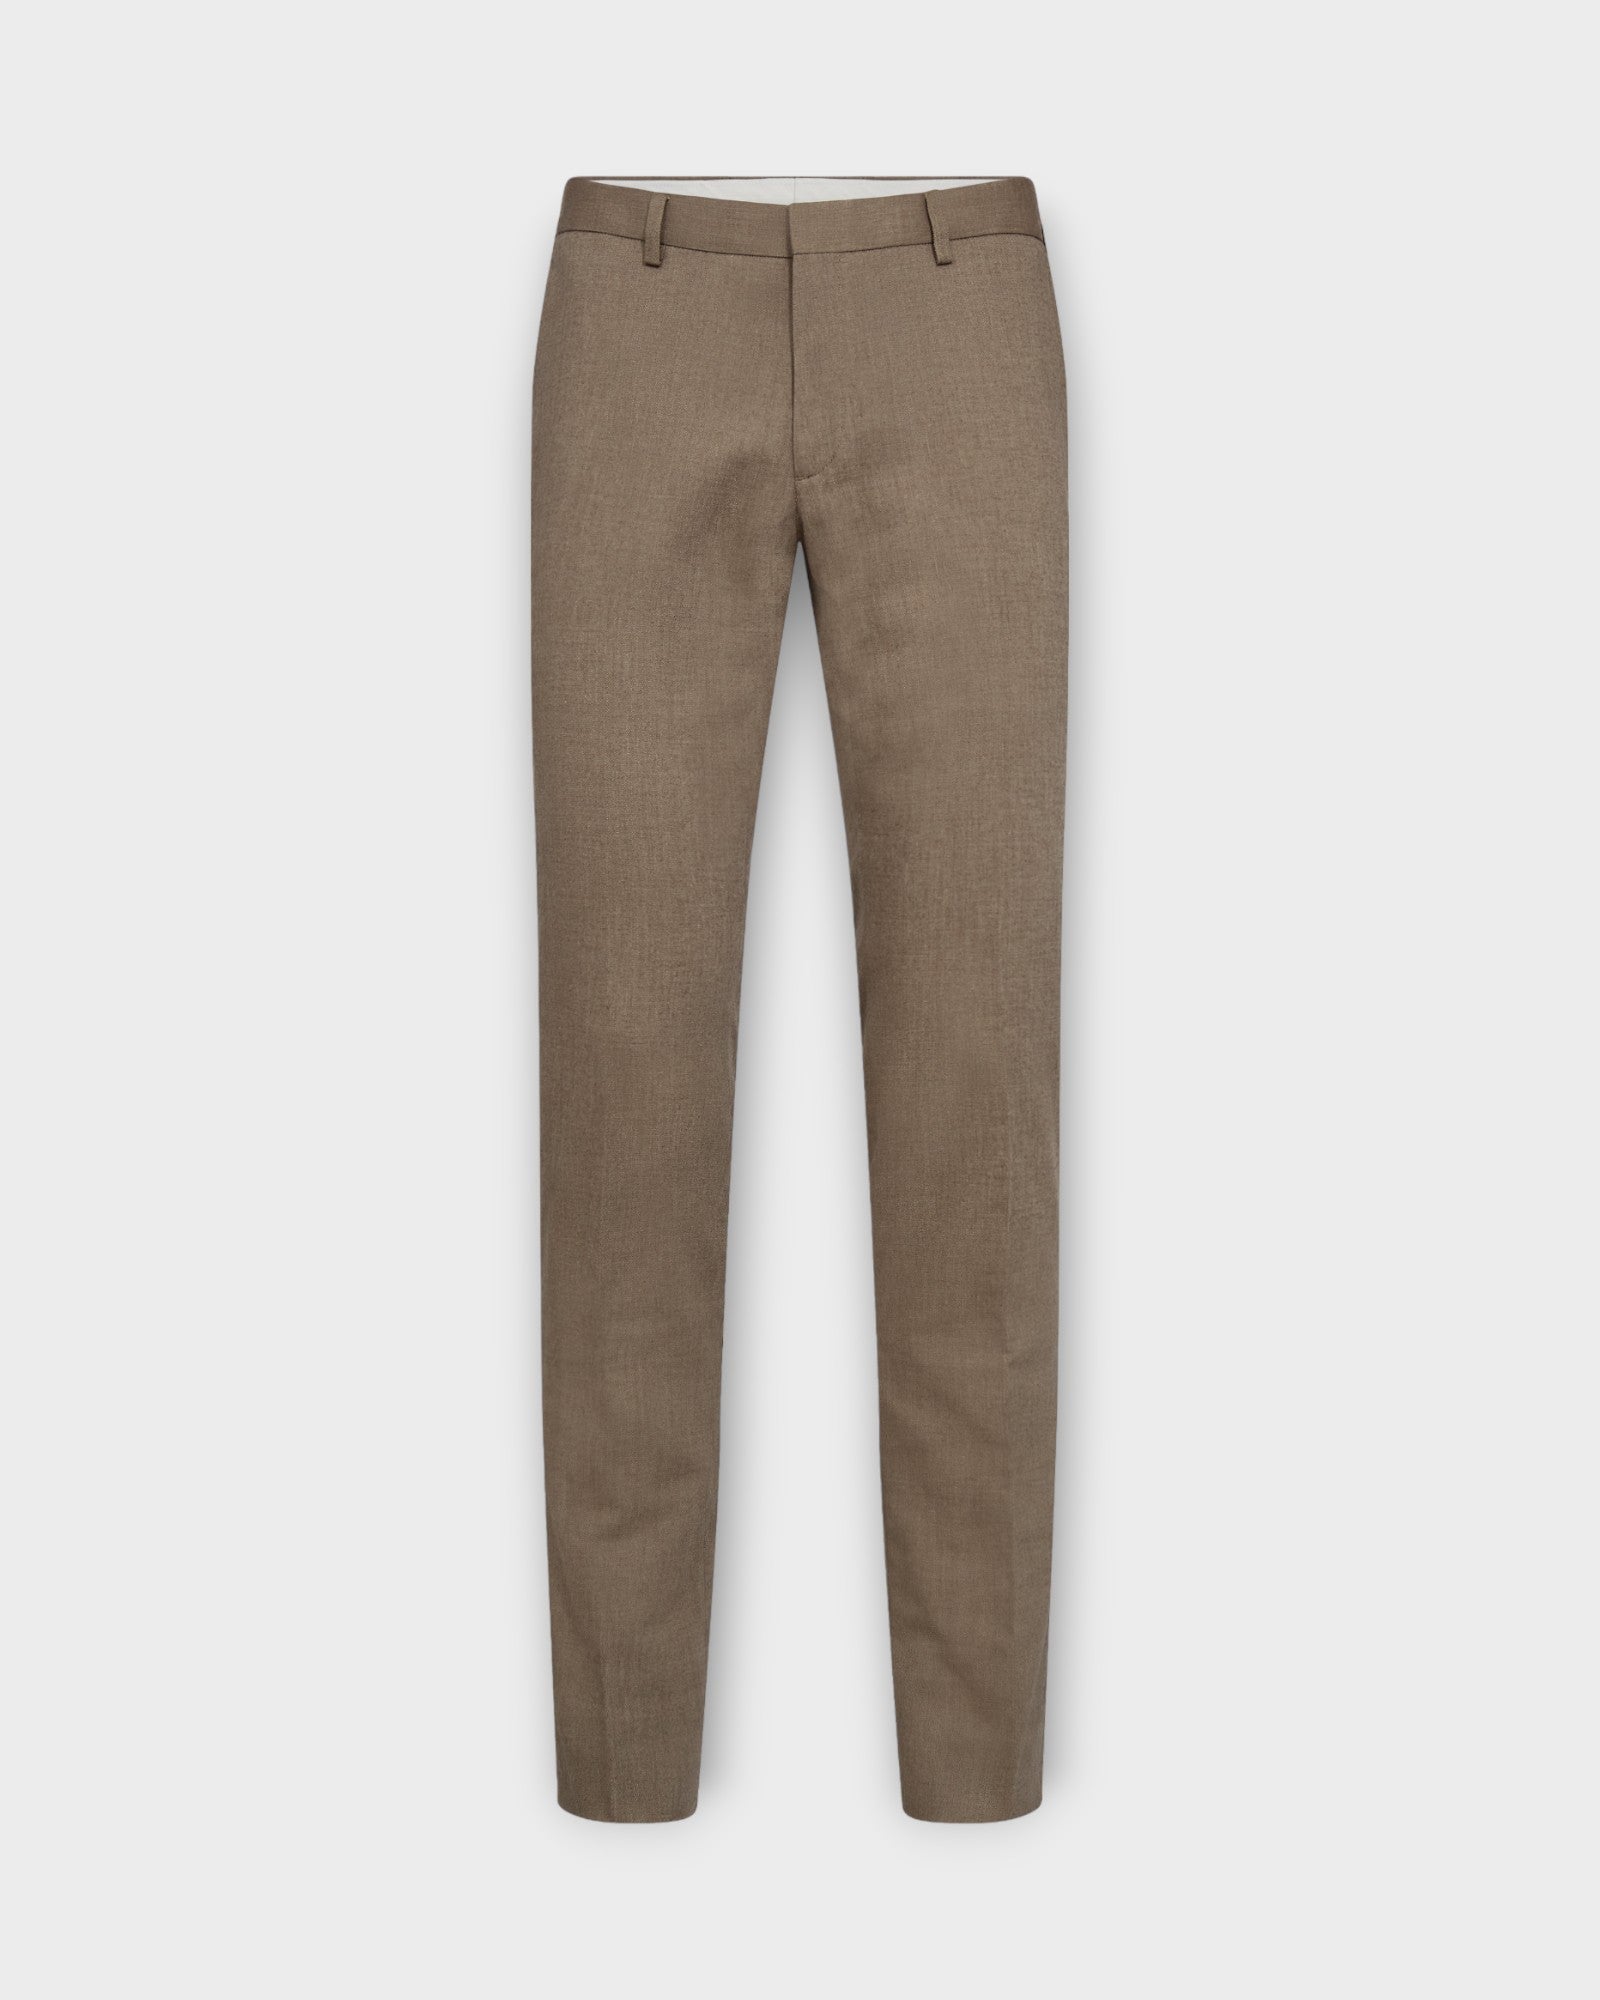 Pollino Classic Fit Suit Pants Brown, brune hørbukser til mænd fra Bruun og Stengade. Her set forfra.